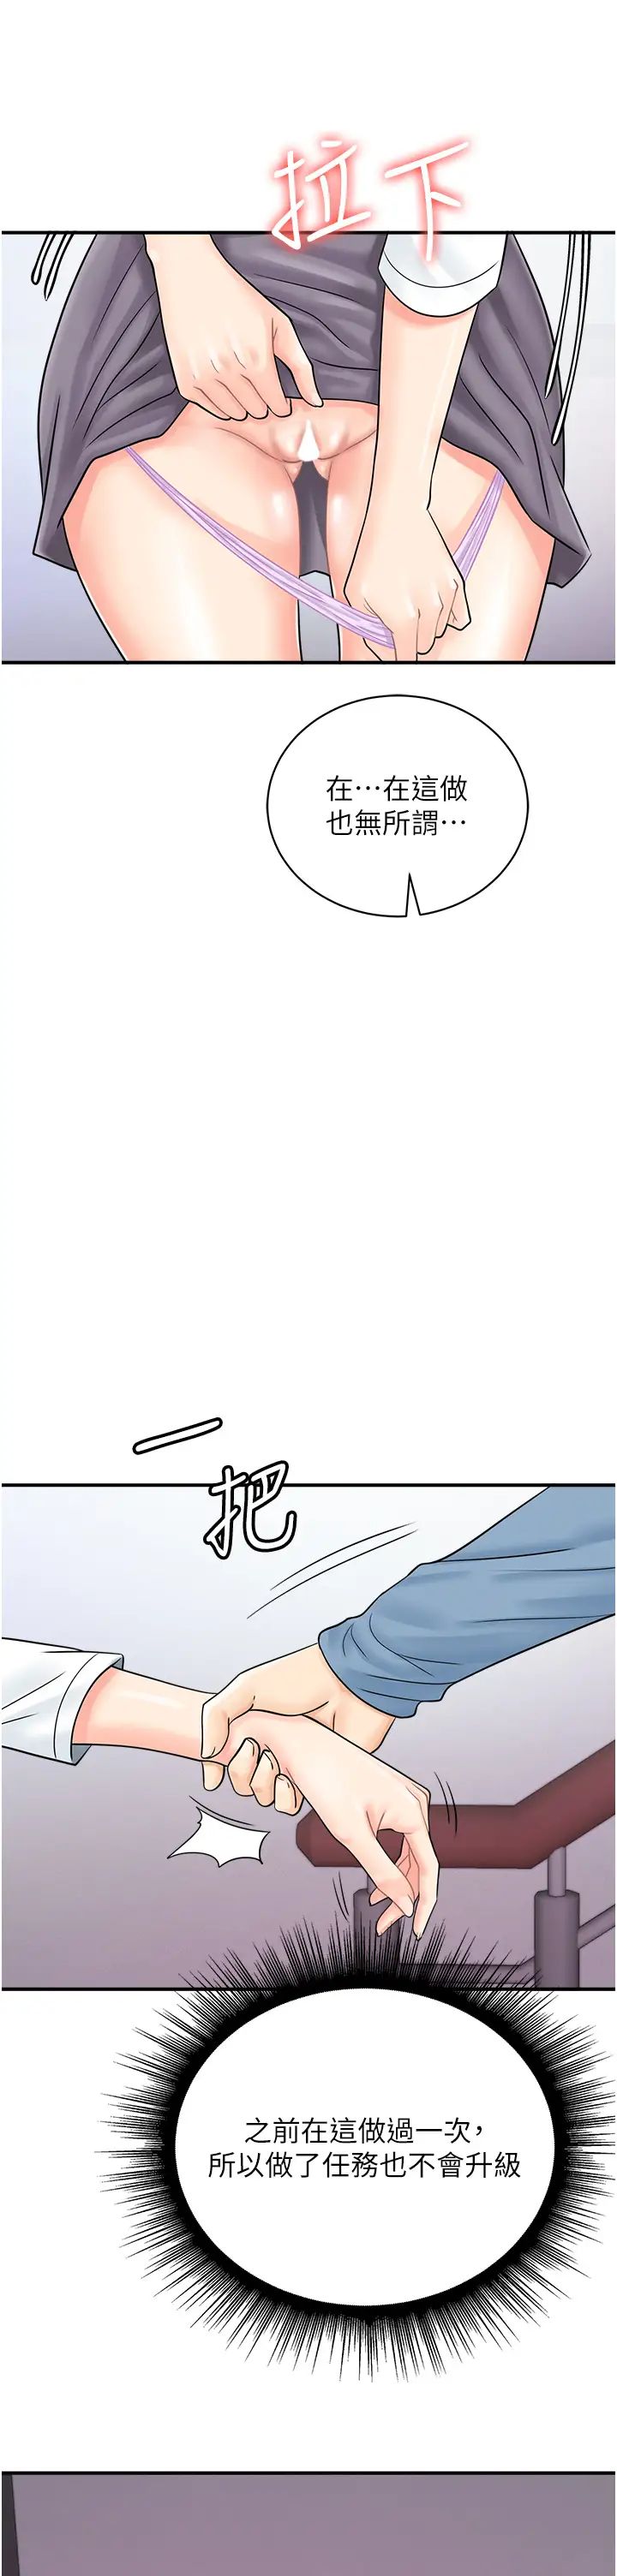 《行動掃碼雞》在线观看 第31话-羞耻带来的快感 漫画图片33